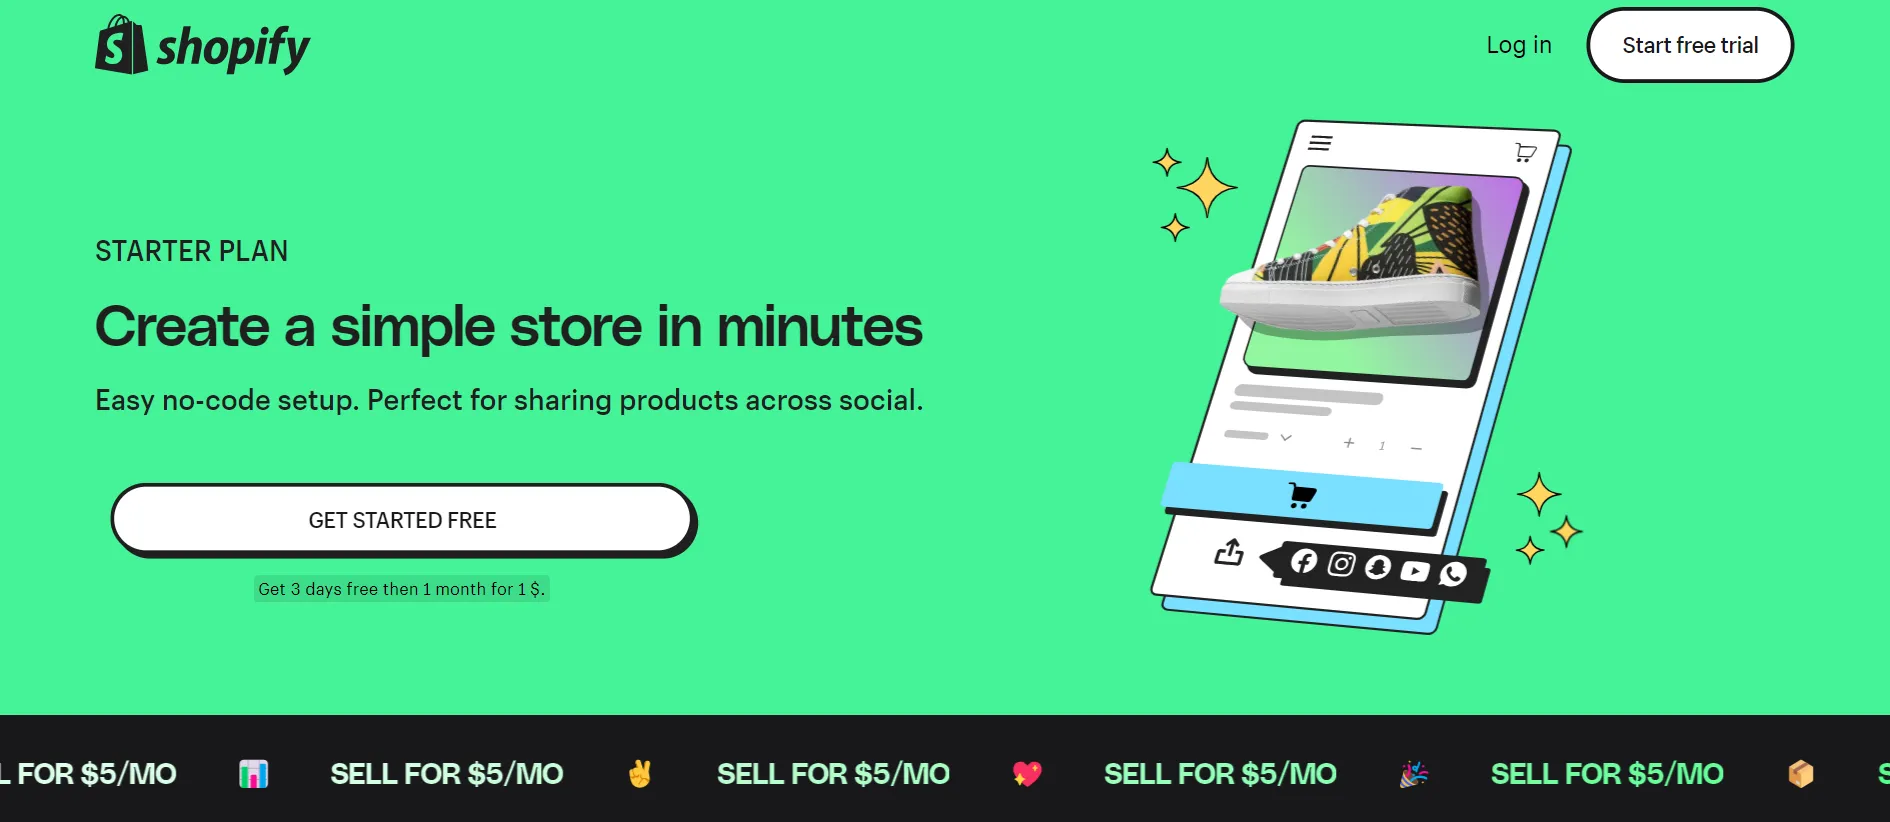 Shopify Starter plan pricing